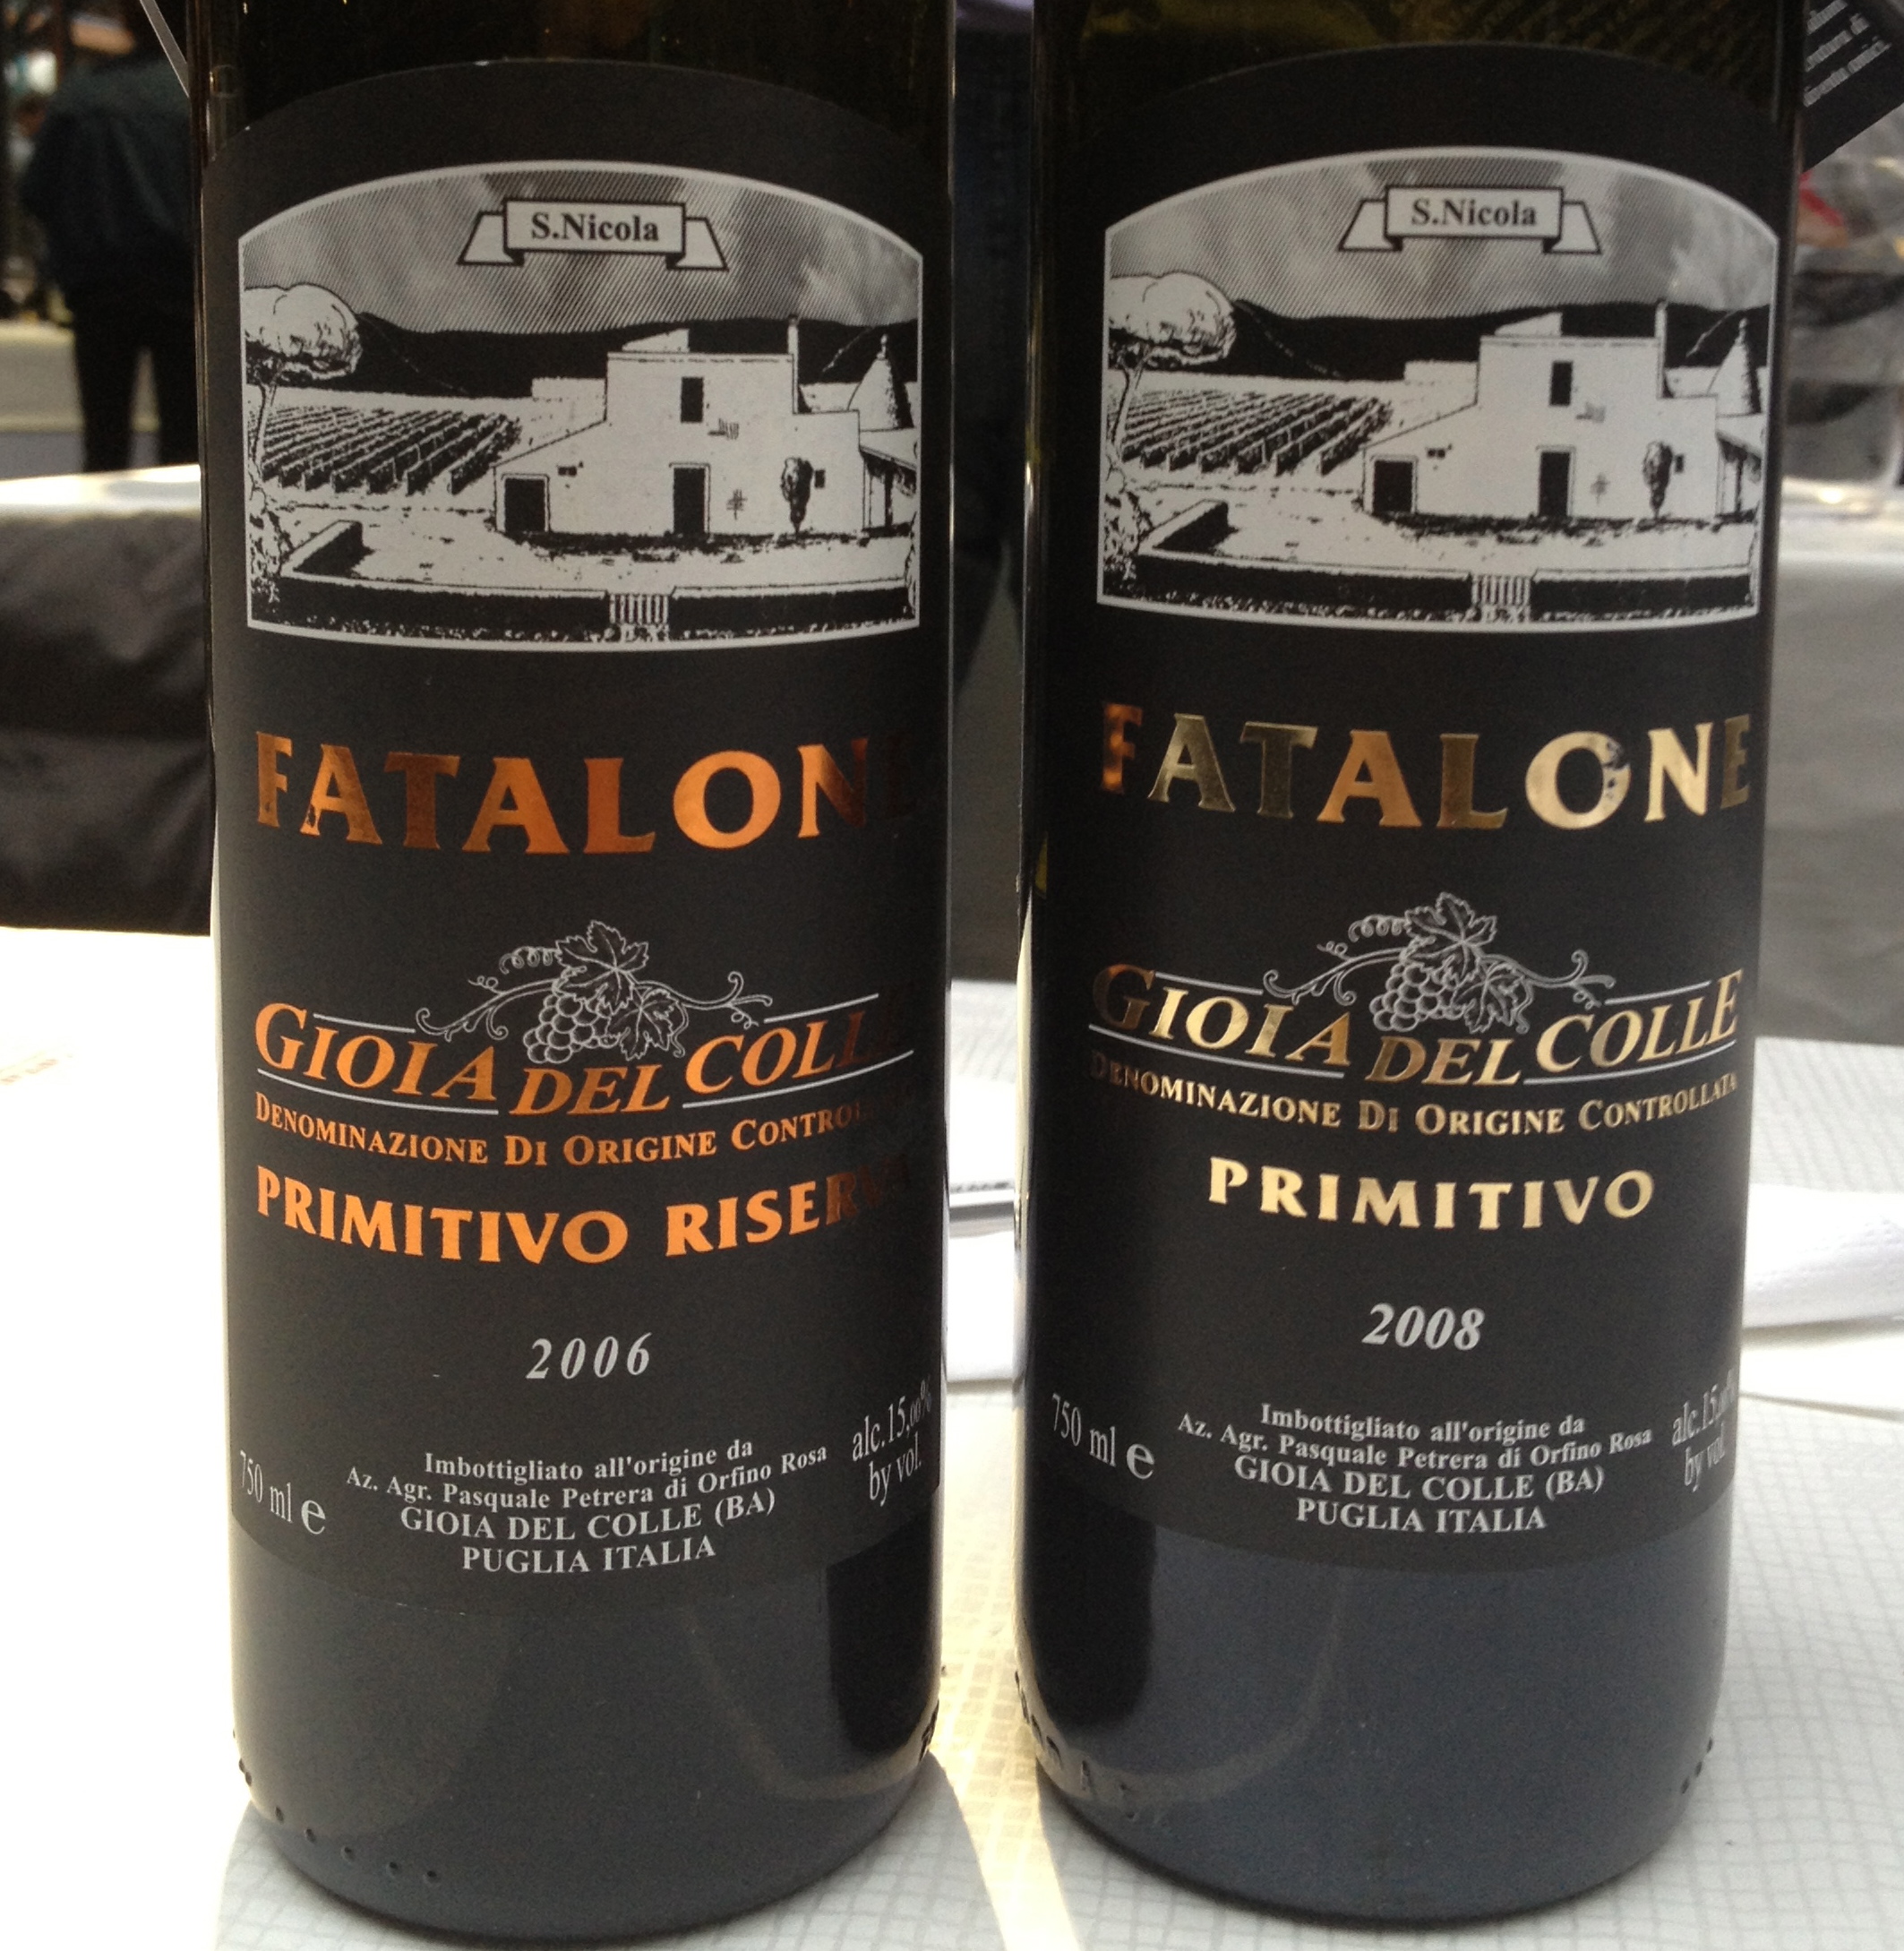 Pure Primitivo wine from Fatalone in Puglia